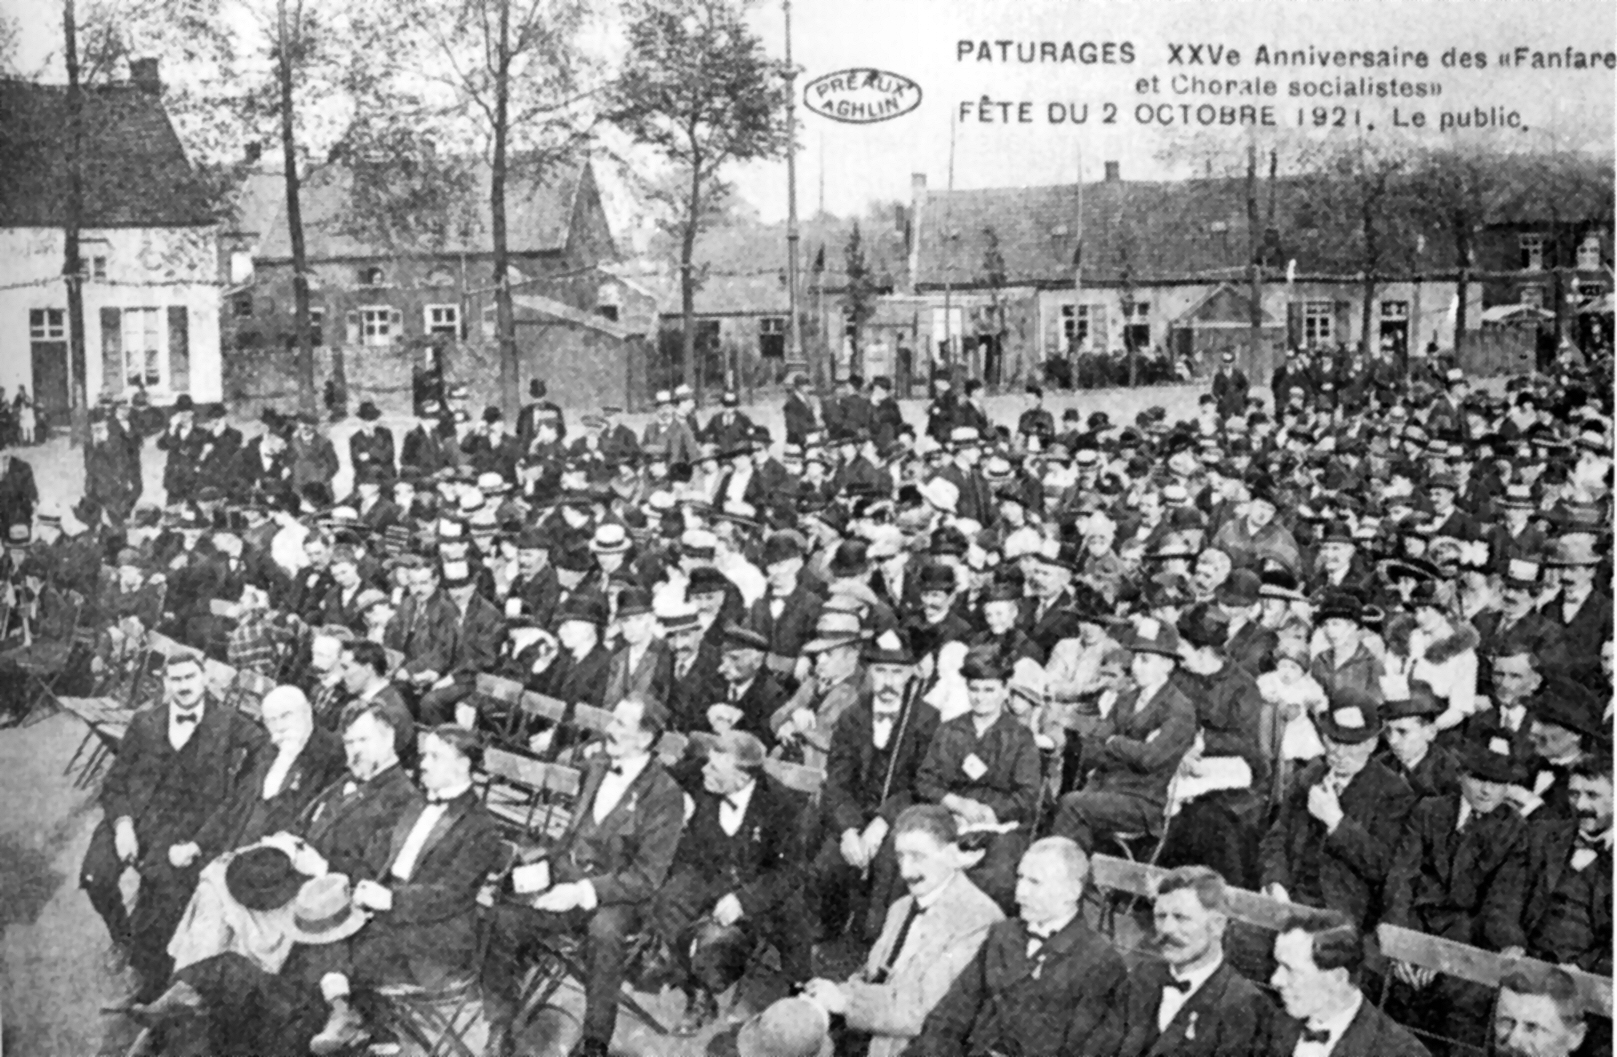 Pâturages : Anniversaire des fanfare et chorale socialistes - Le public (2 octobre 1921).